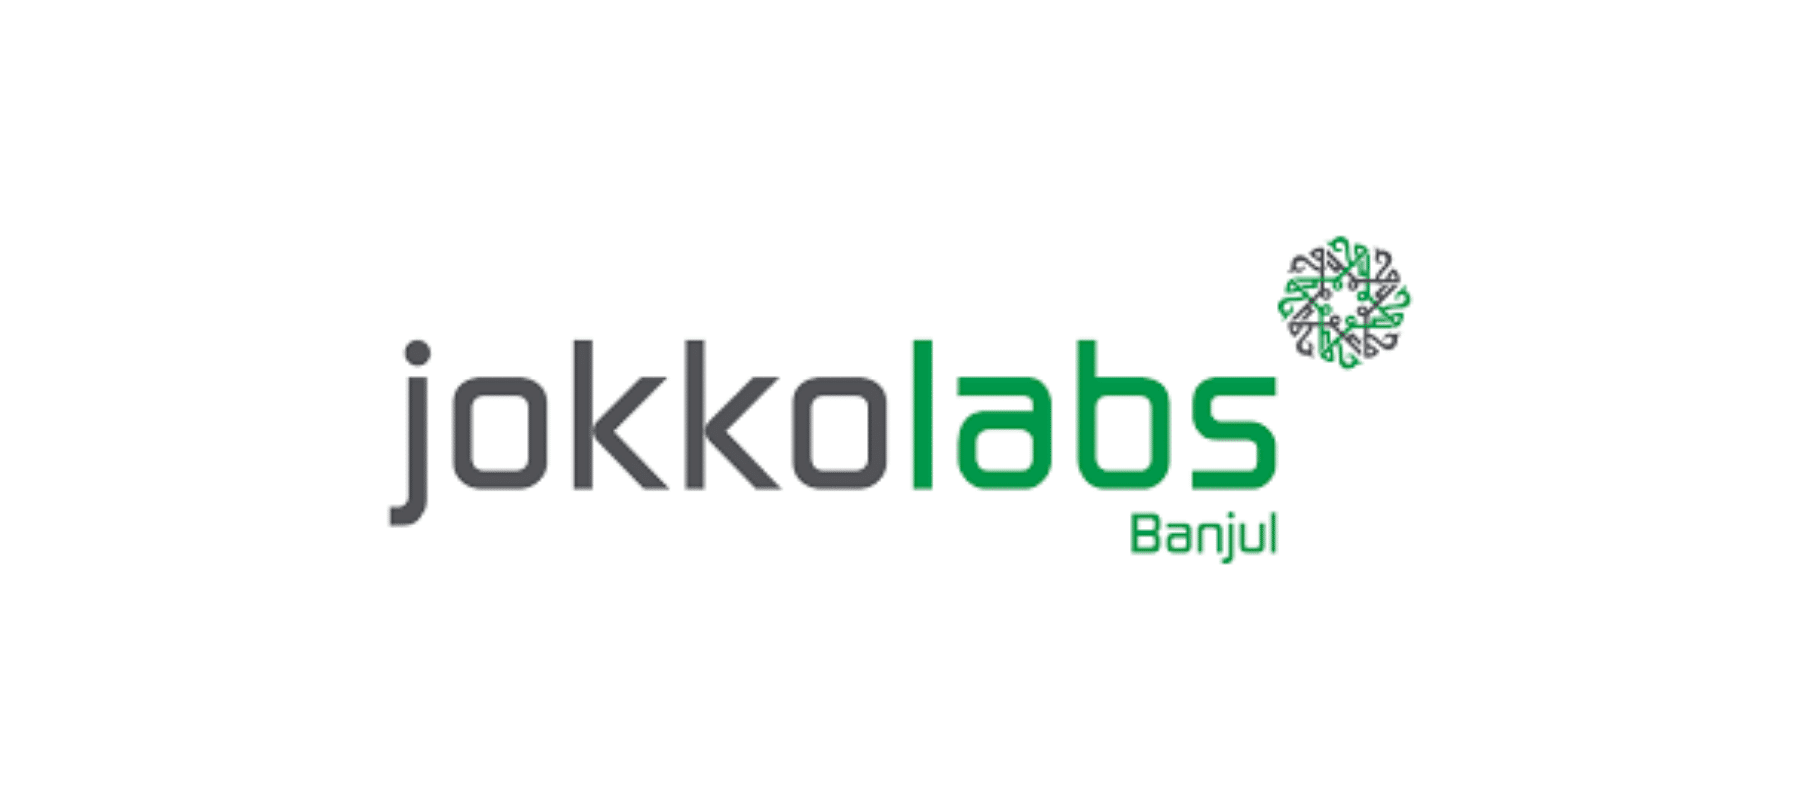 Jokkolabs Banjul logo3